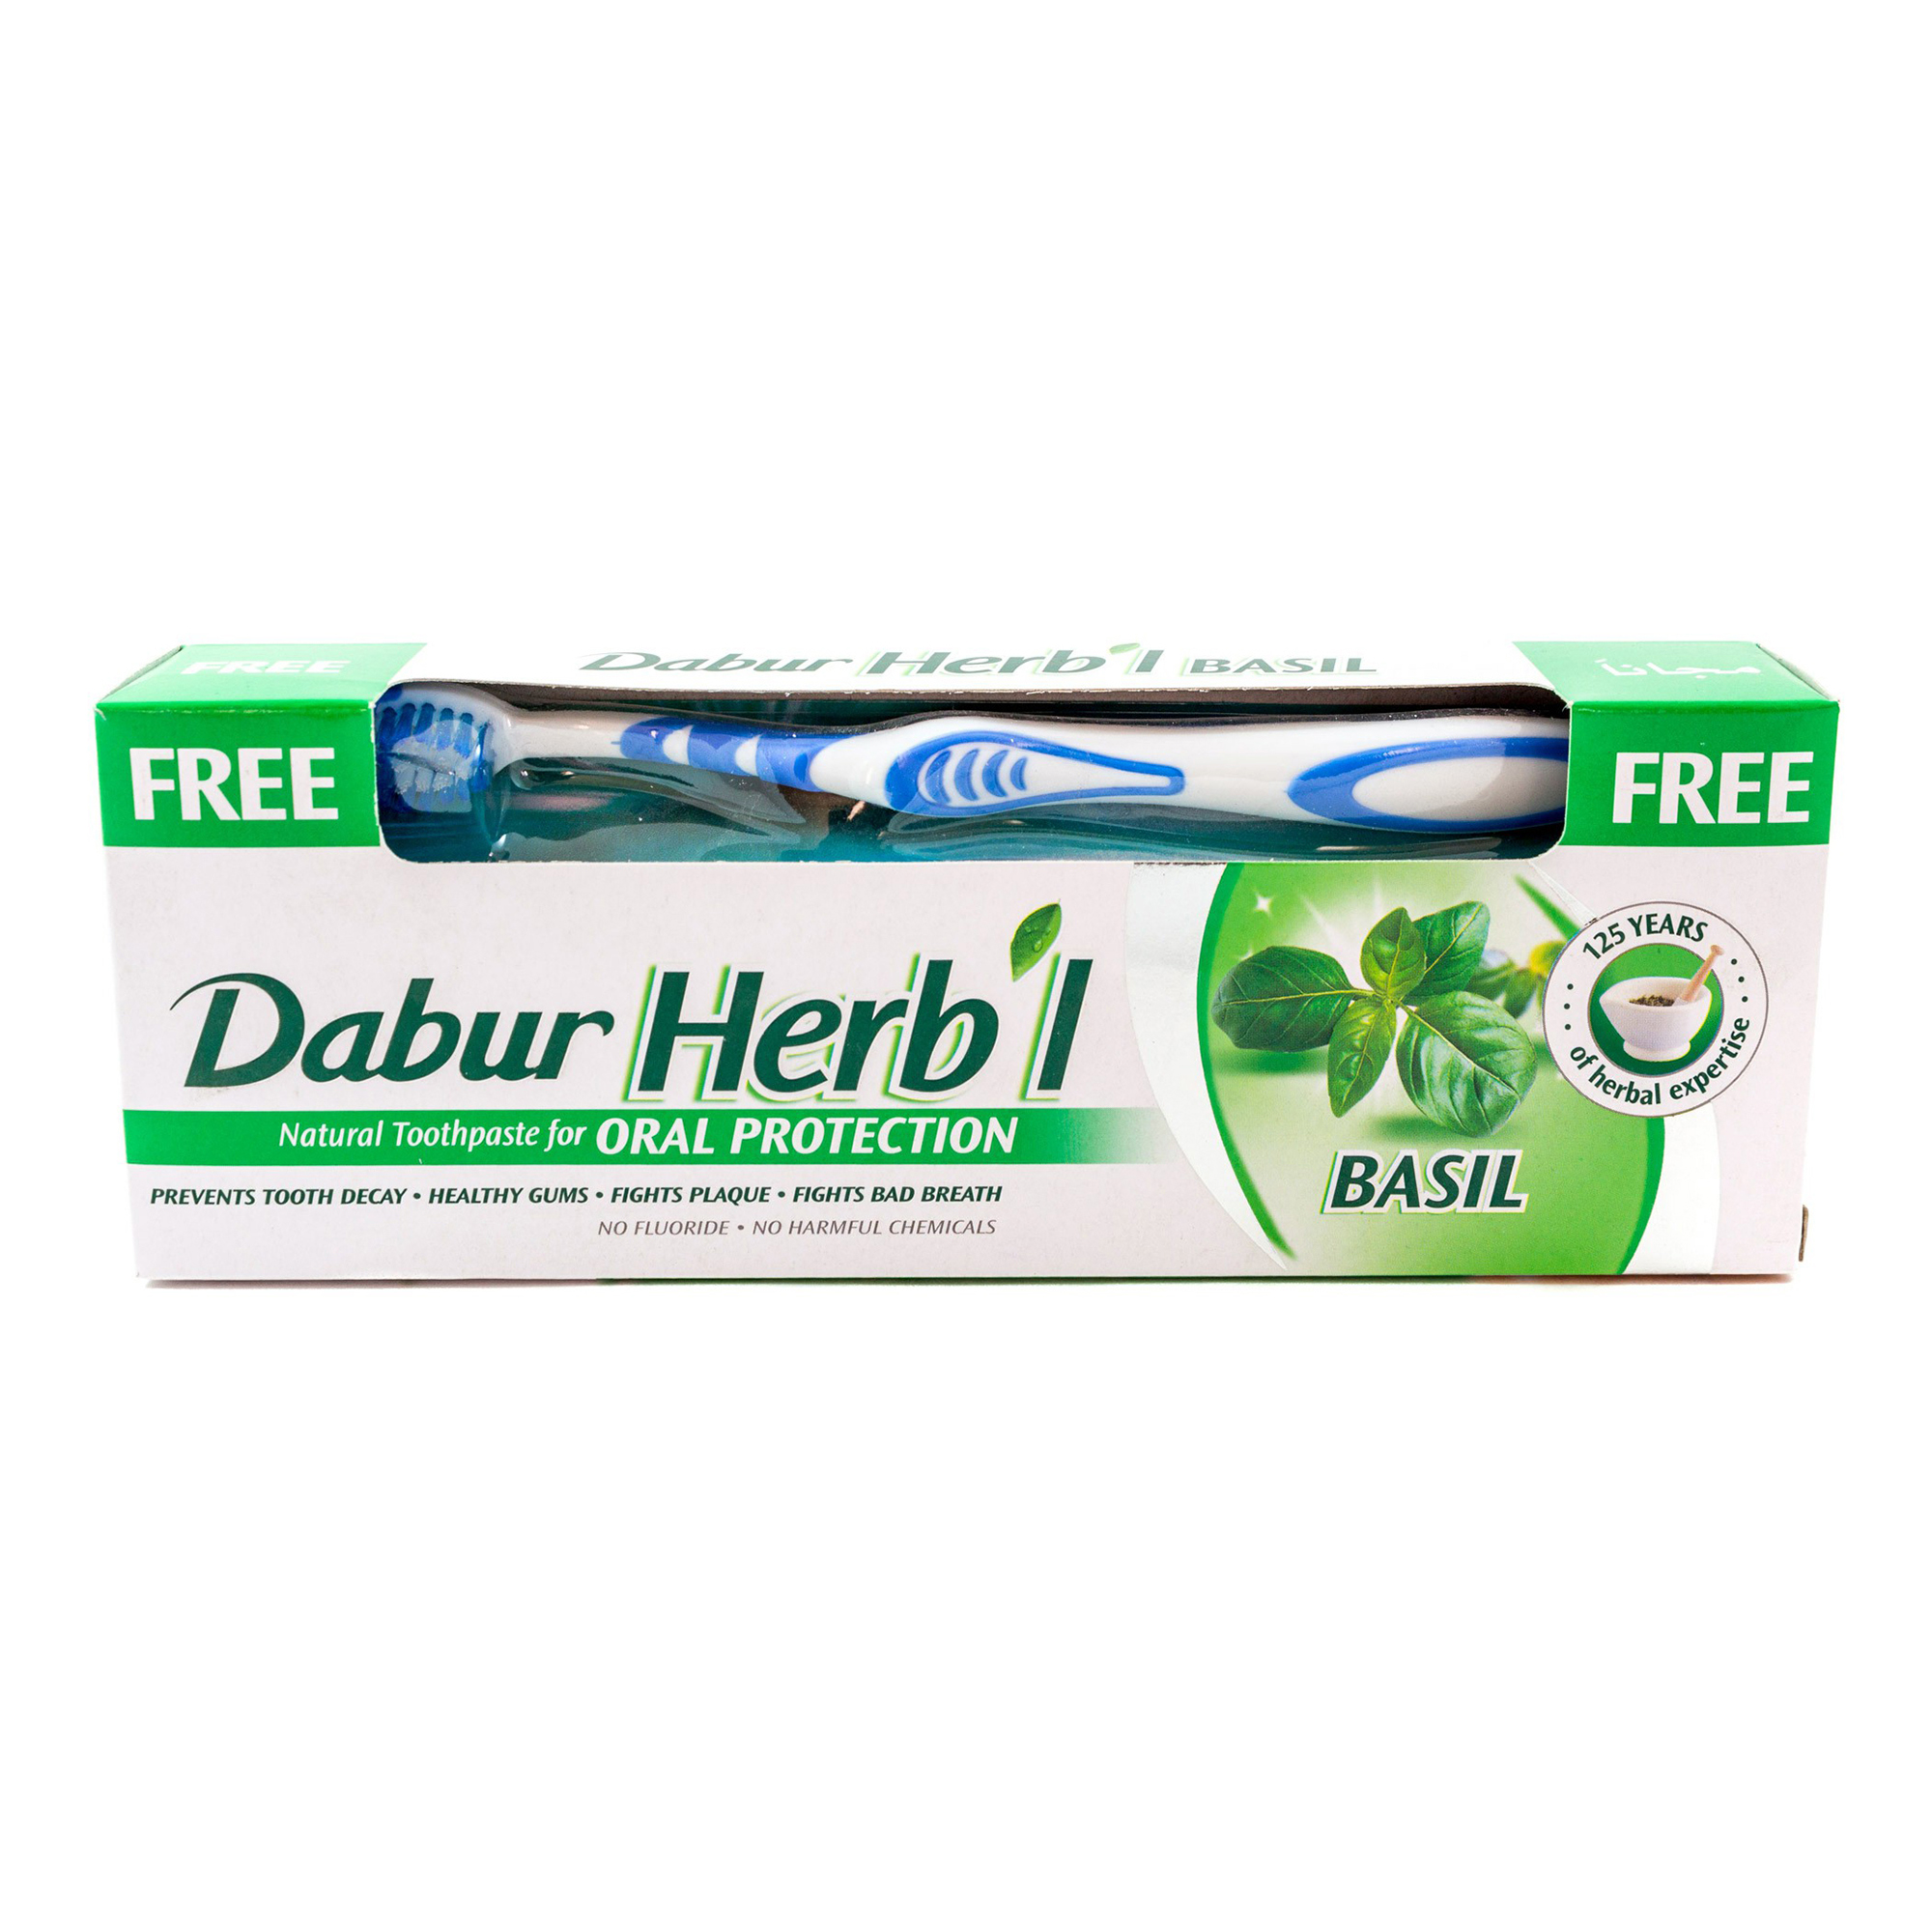 Зубная паста Dabur Herb'l Basil с зубной щеткой 150 г зубная паста dabur miswak herbal 170 г